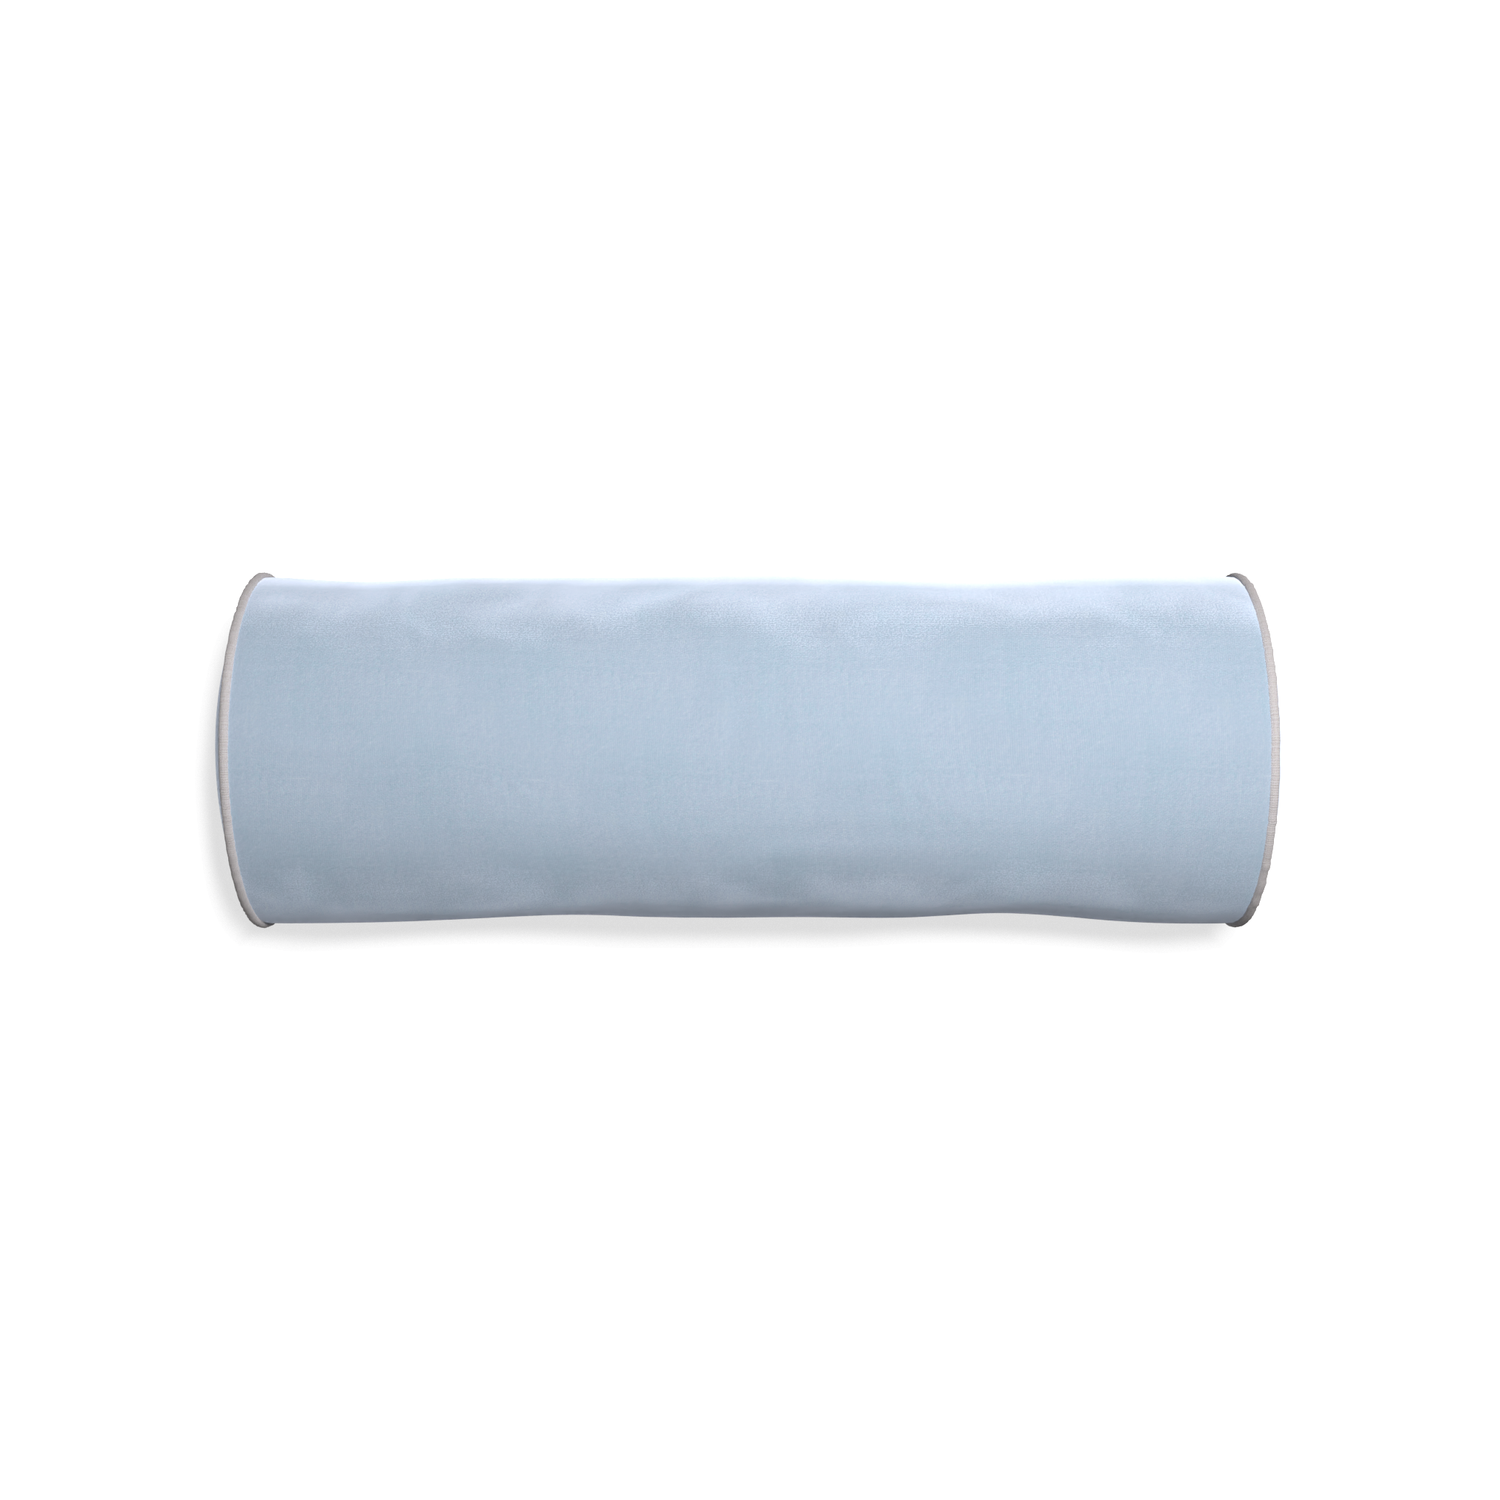 Bolster sky velvet custom pillow with pebble piping on white background